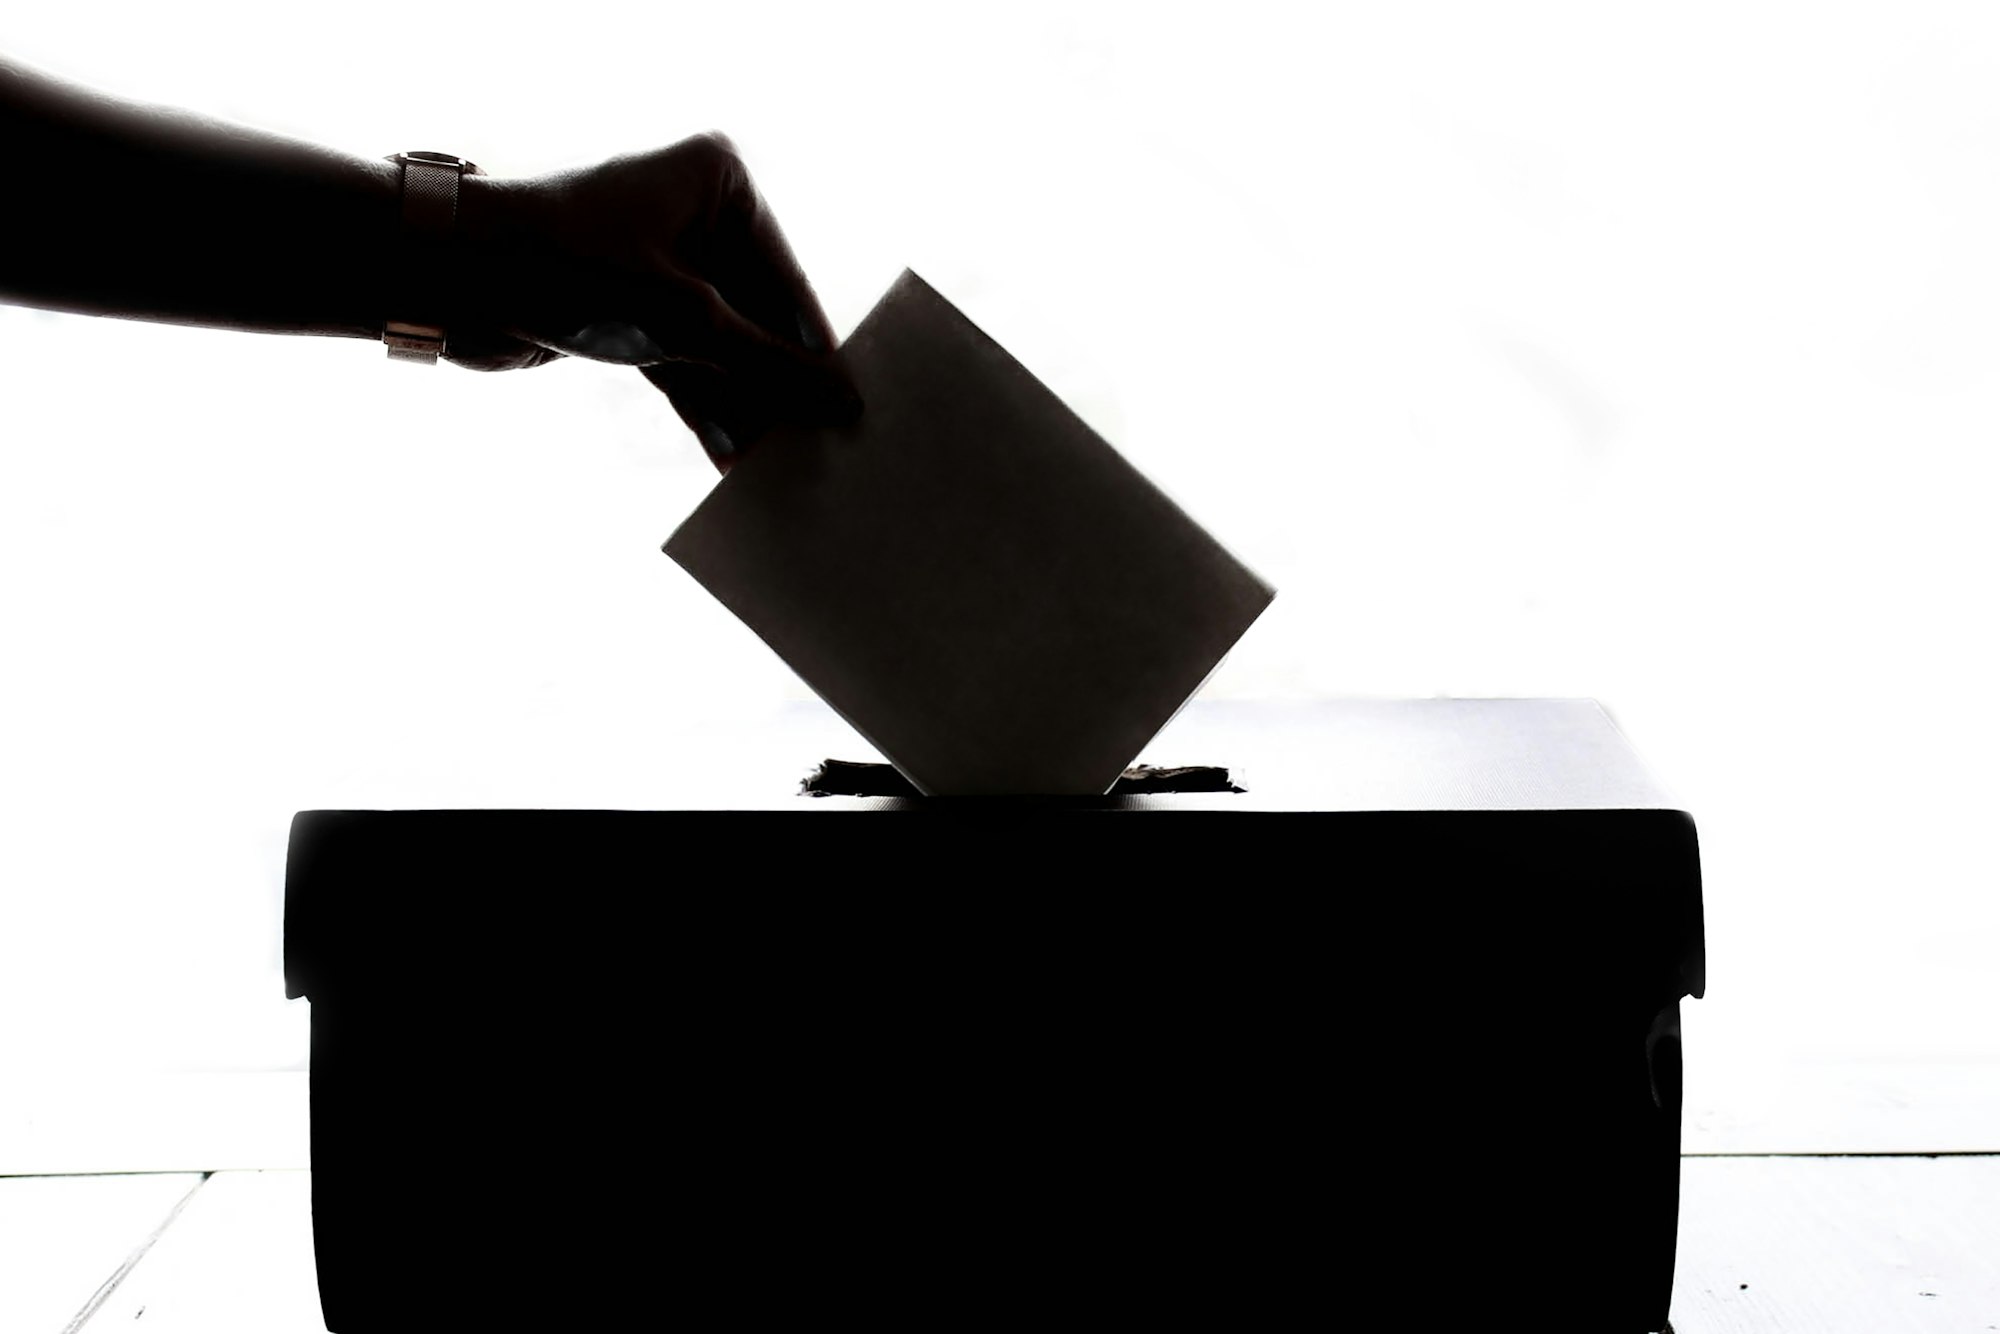 A person's arm putting ballot into ballot box